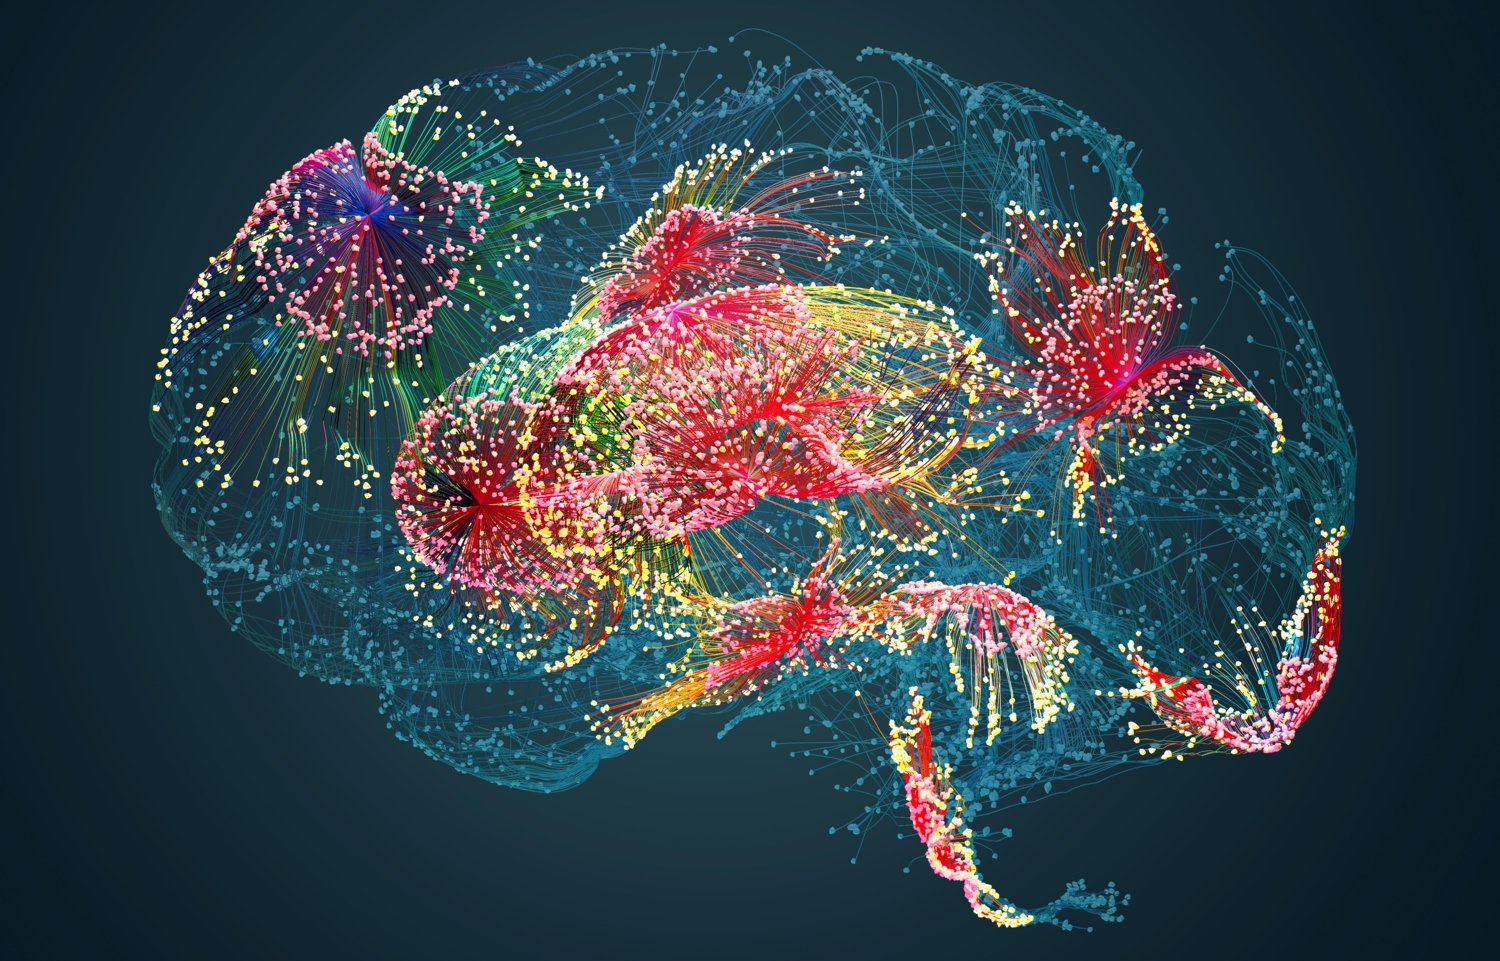 Illustration färgglad hjärna